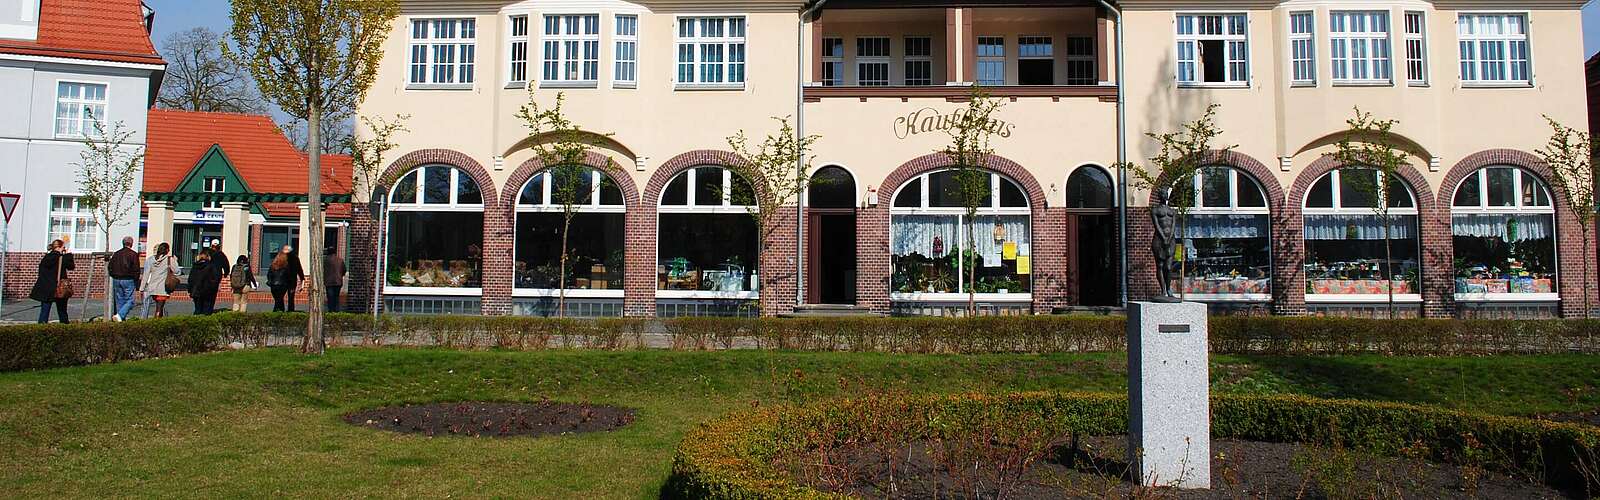 Blick auf das Kaufhaus der Gartenstadt Marga,
        
    

        Foto: TMB-Fotoarchiv/Claus-Dieter Steyer